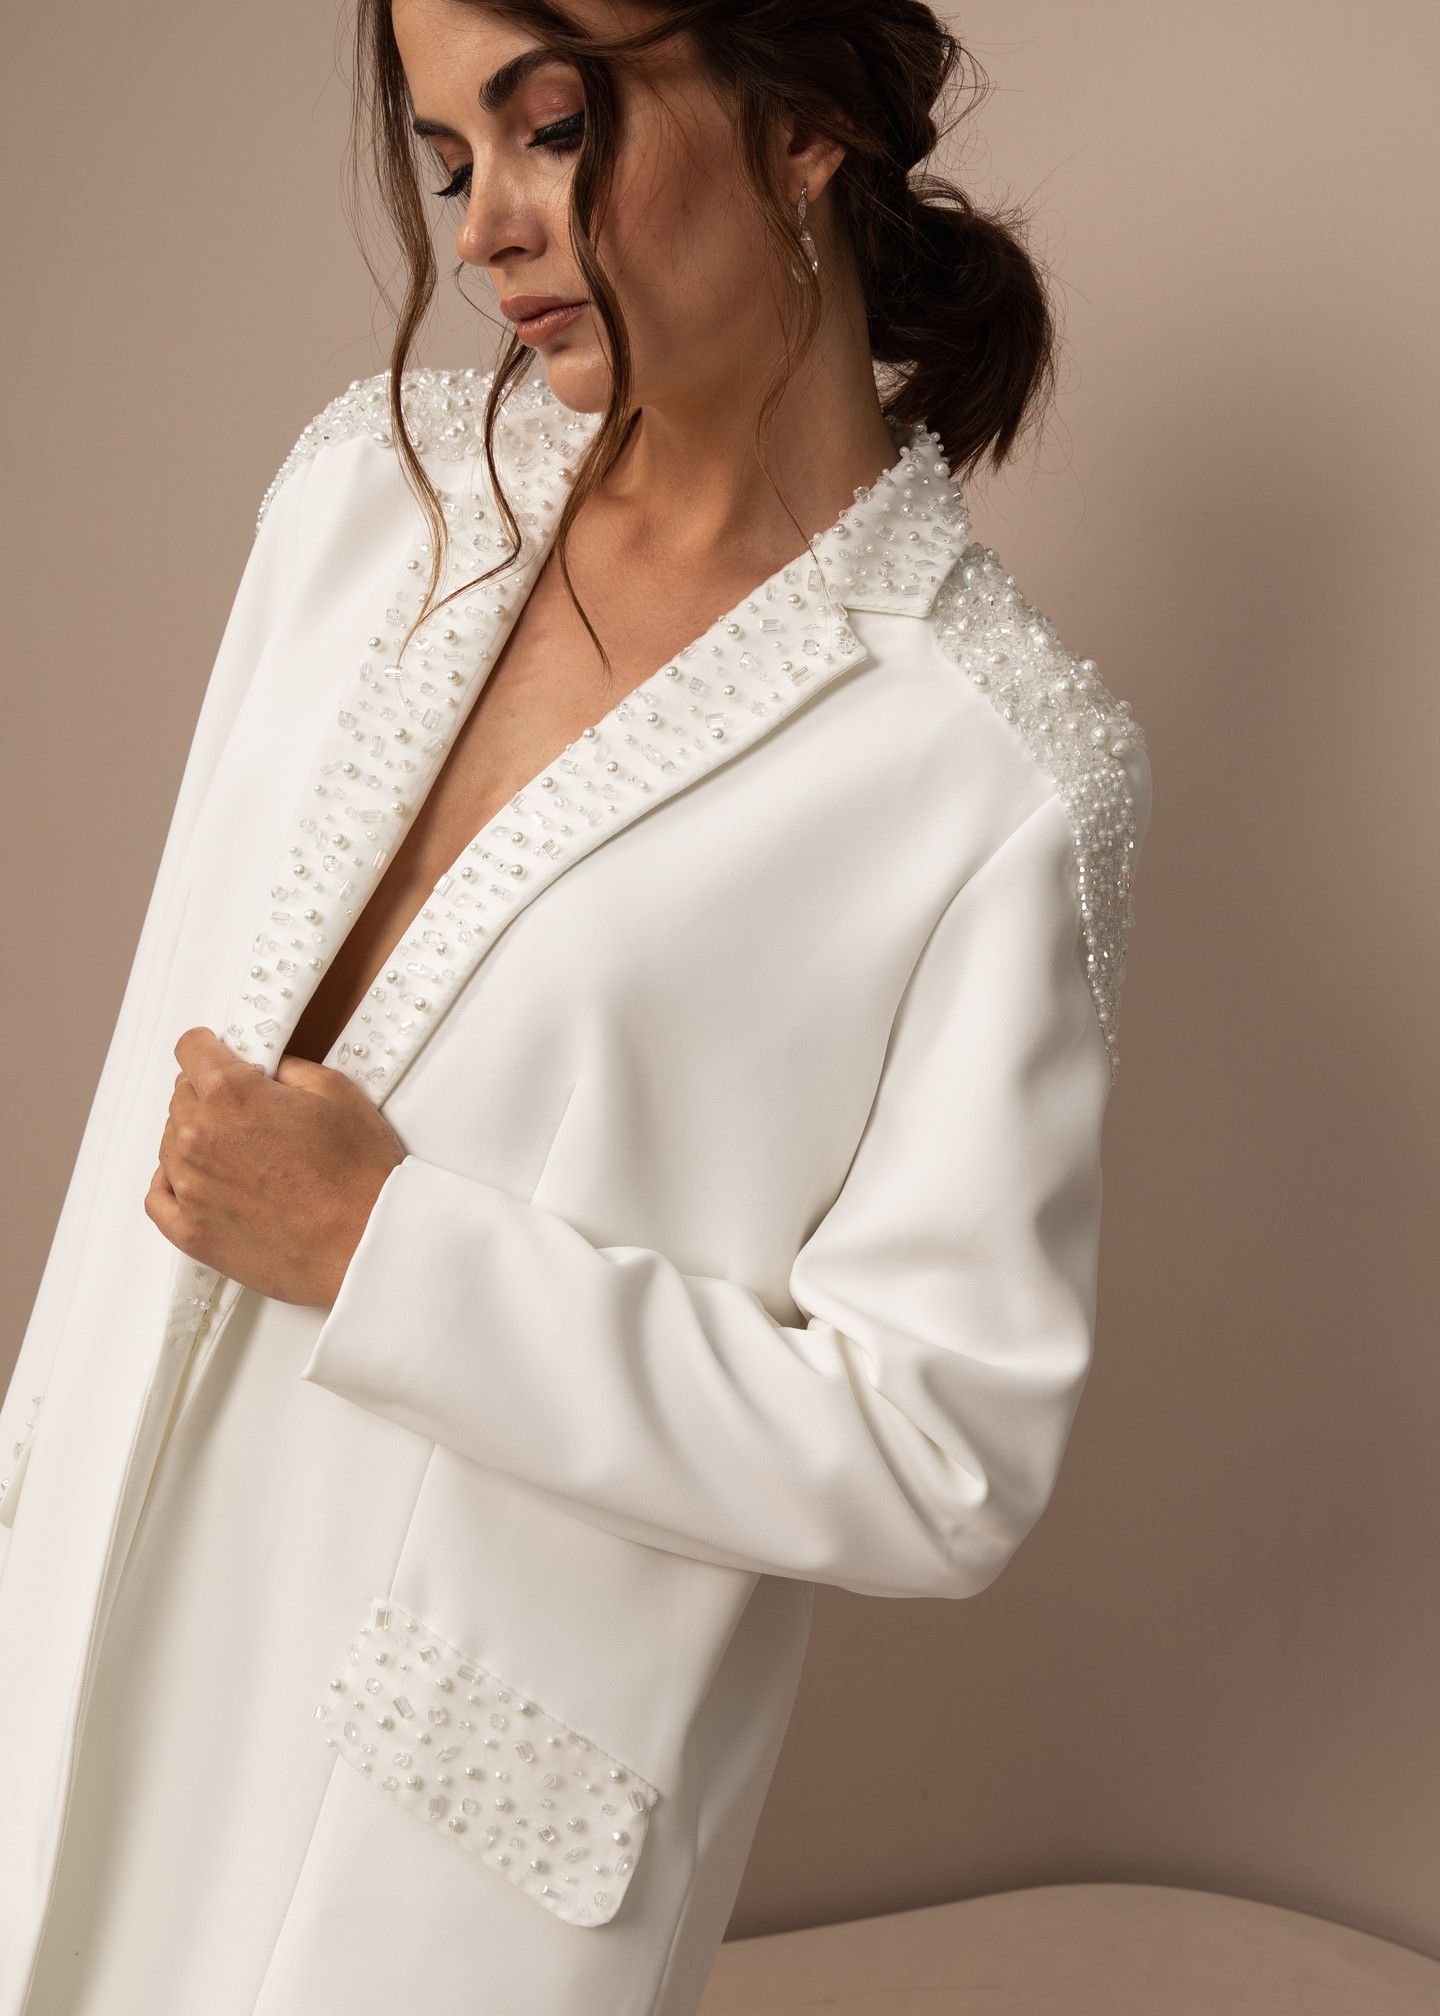 Жакет с вышивкой и эполетами, 2021, одежда, жакет, свадебное, молочно-белый, расшитый свадебный костюм №3, рукава, вышивка